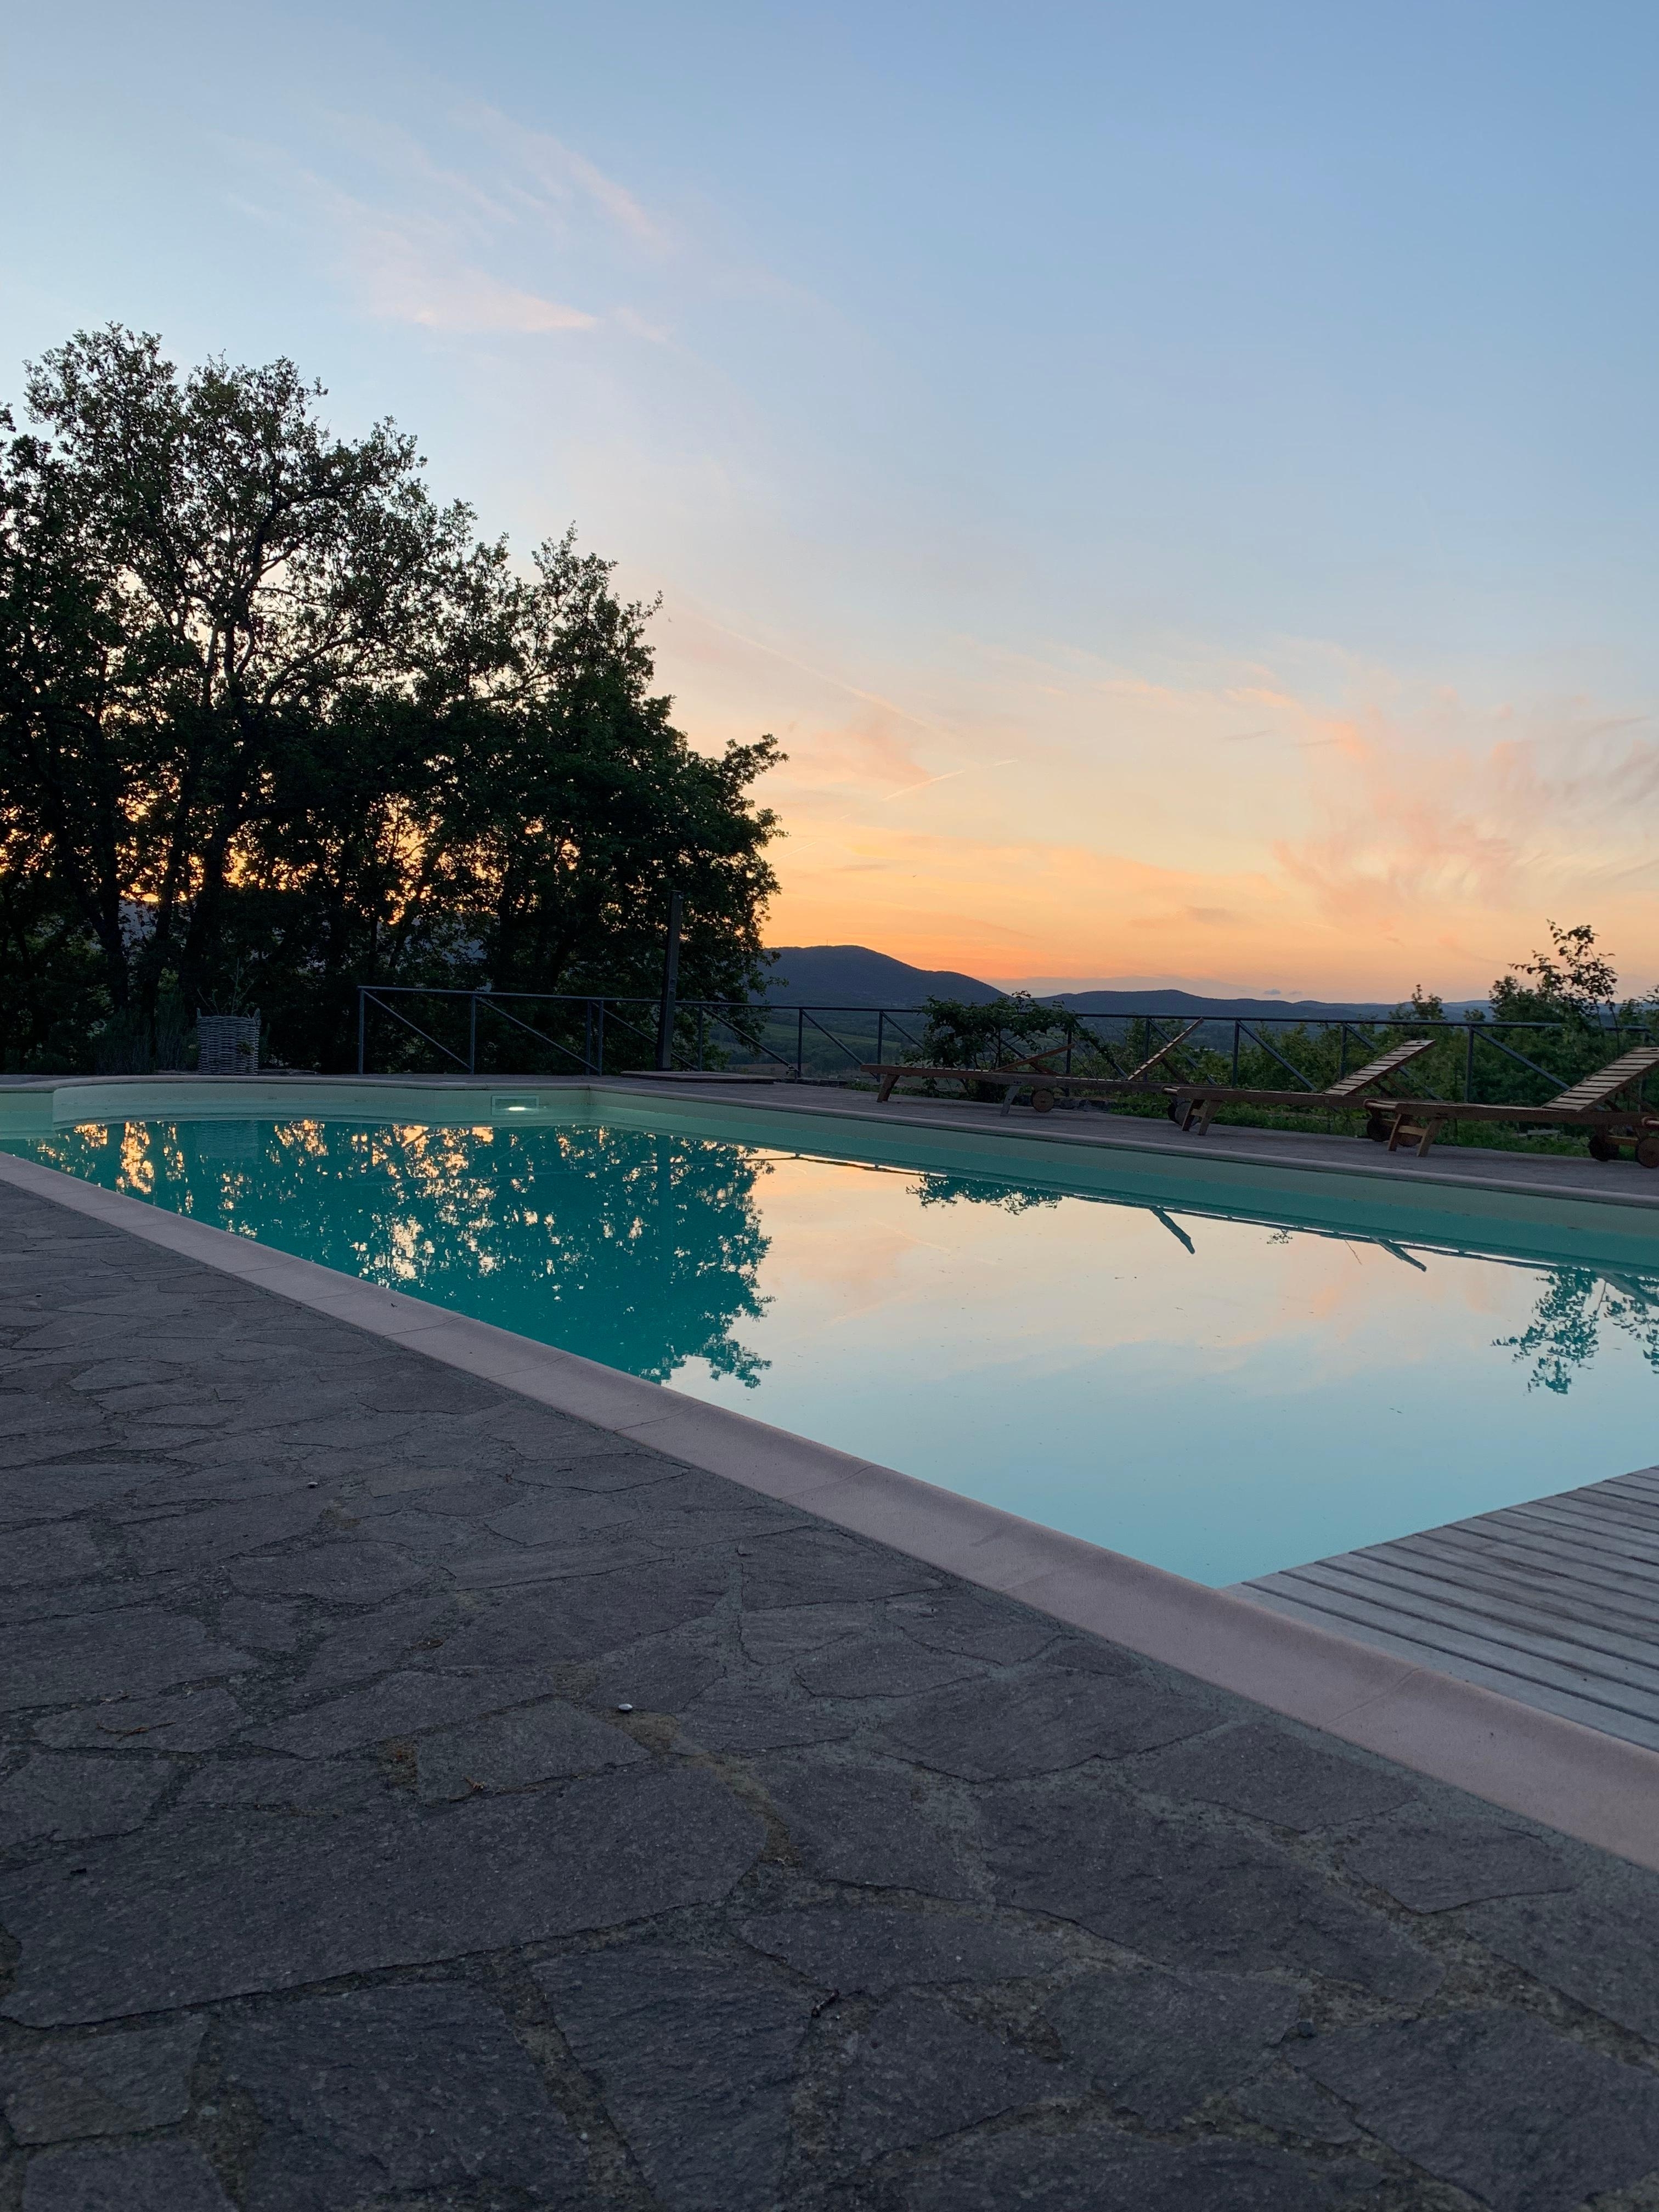 Sonnenuntergänge sind einfach magisch #italien #toskana #pool #garten #ferienhaus #natur #sundowner #urlaub 